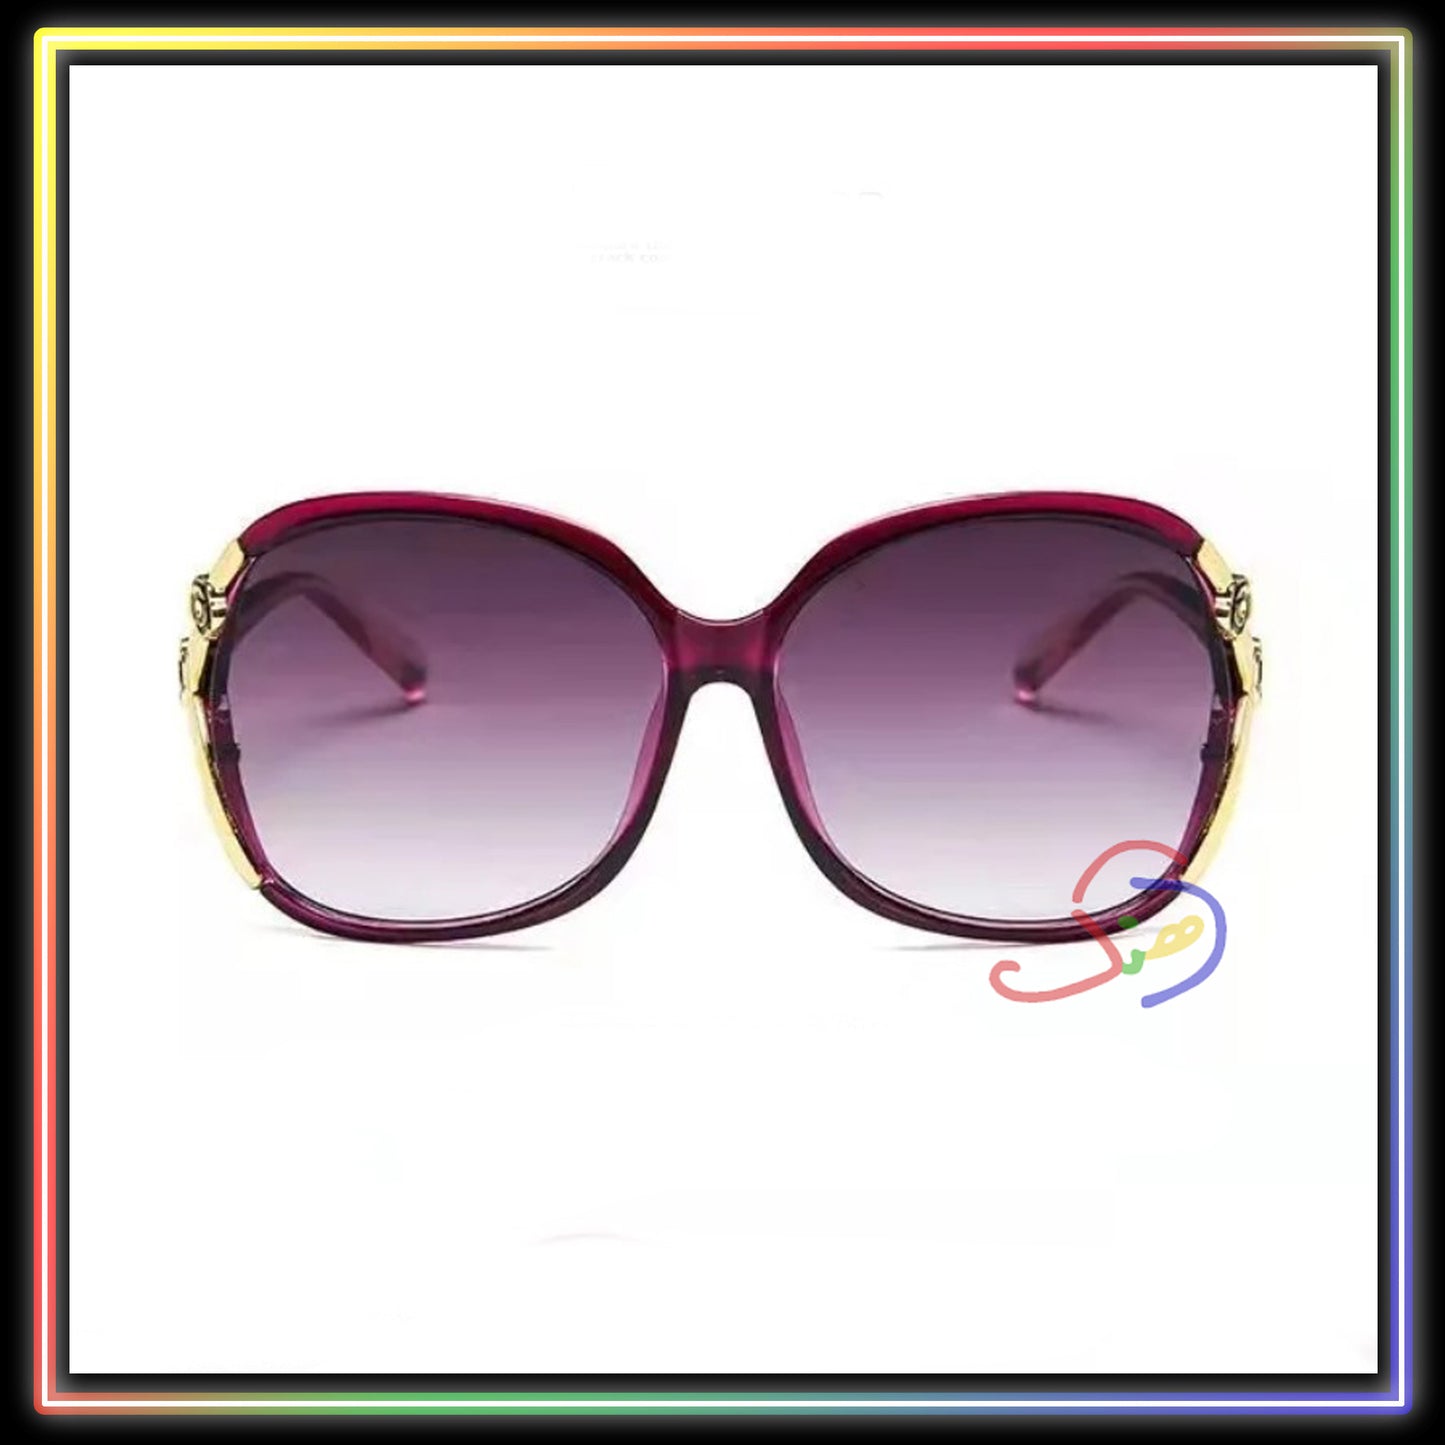 Retro Sunglasses - Plum